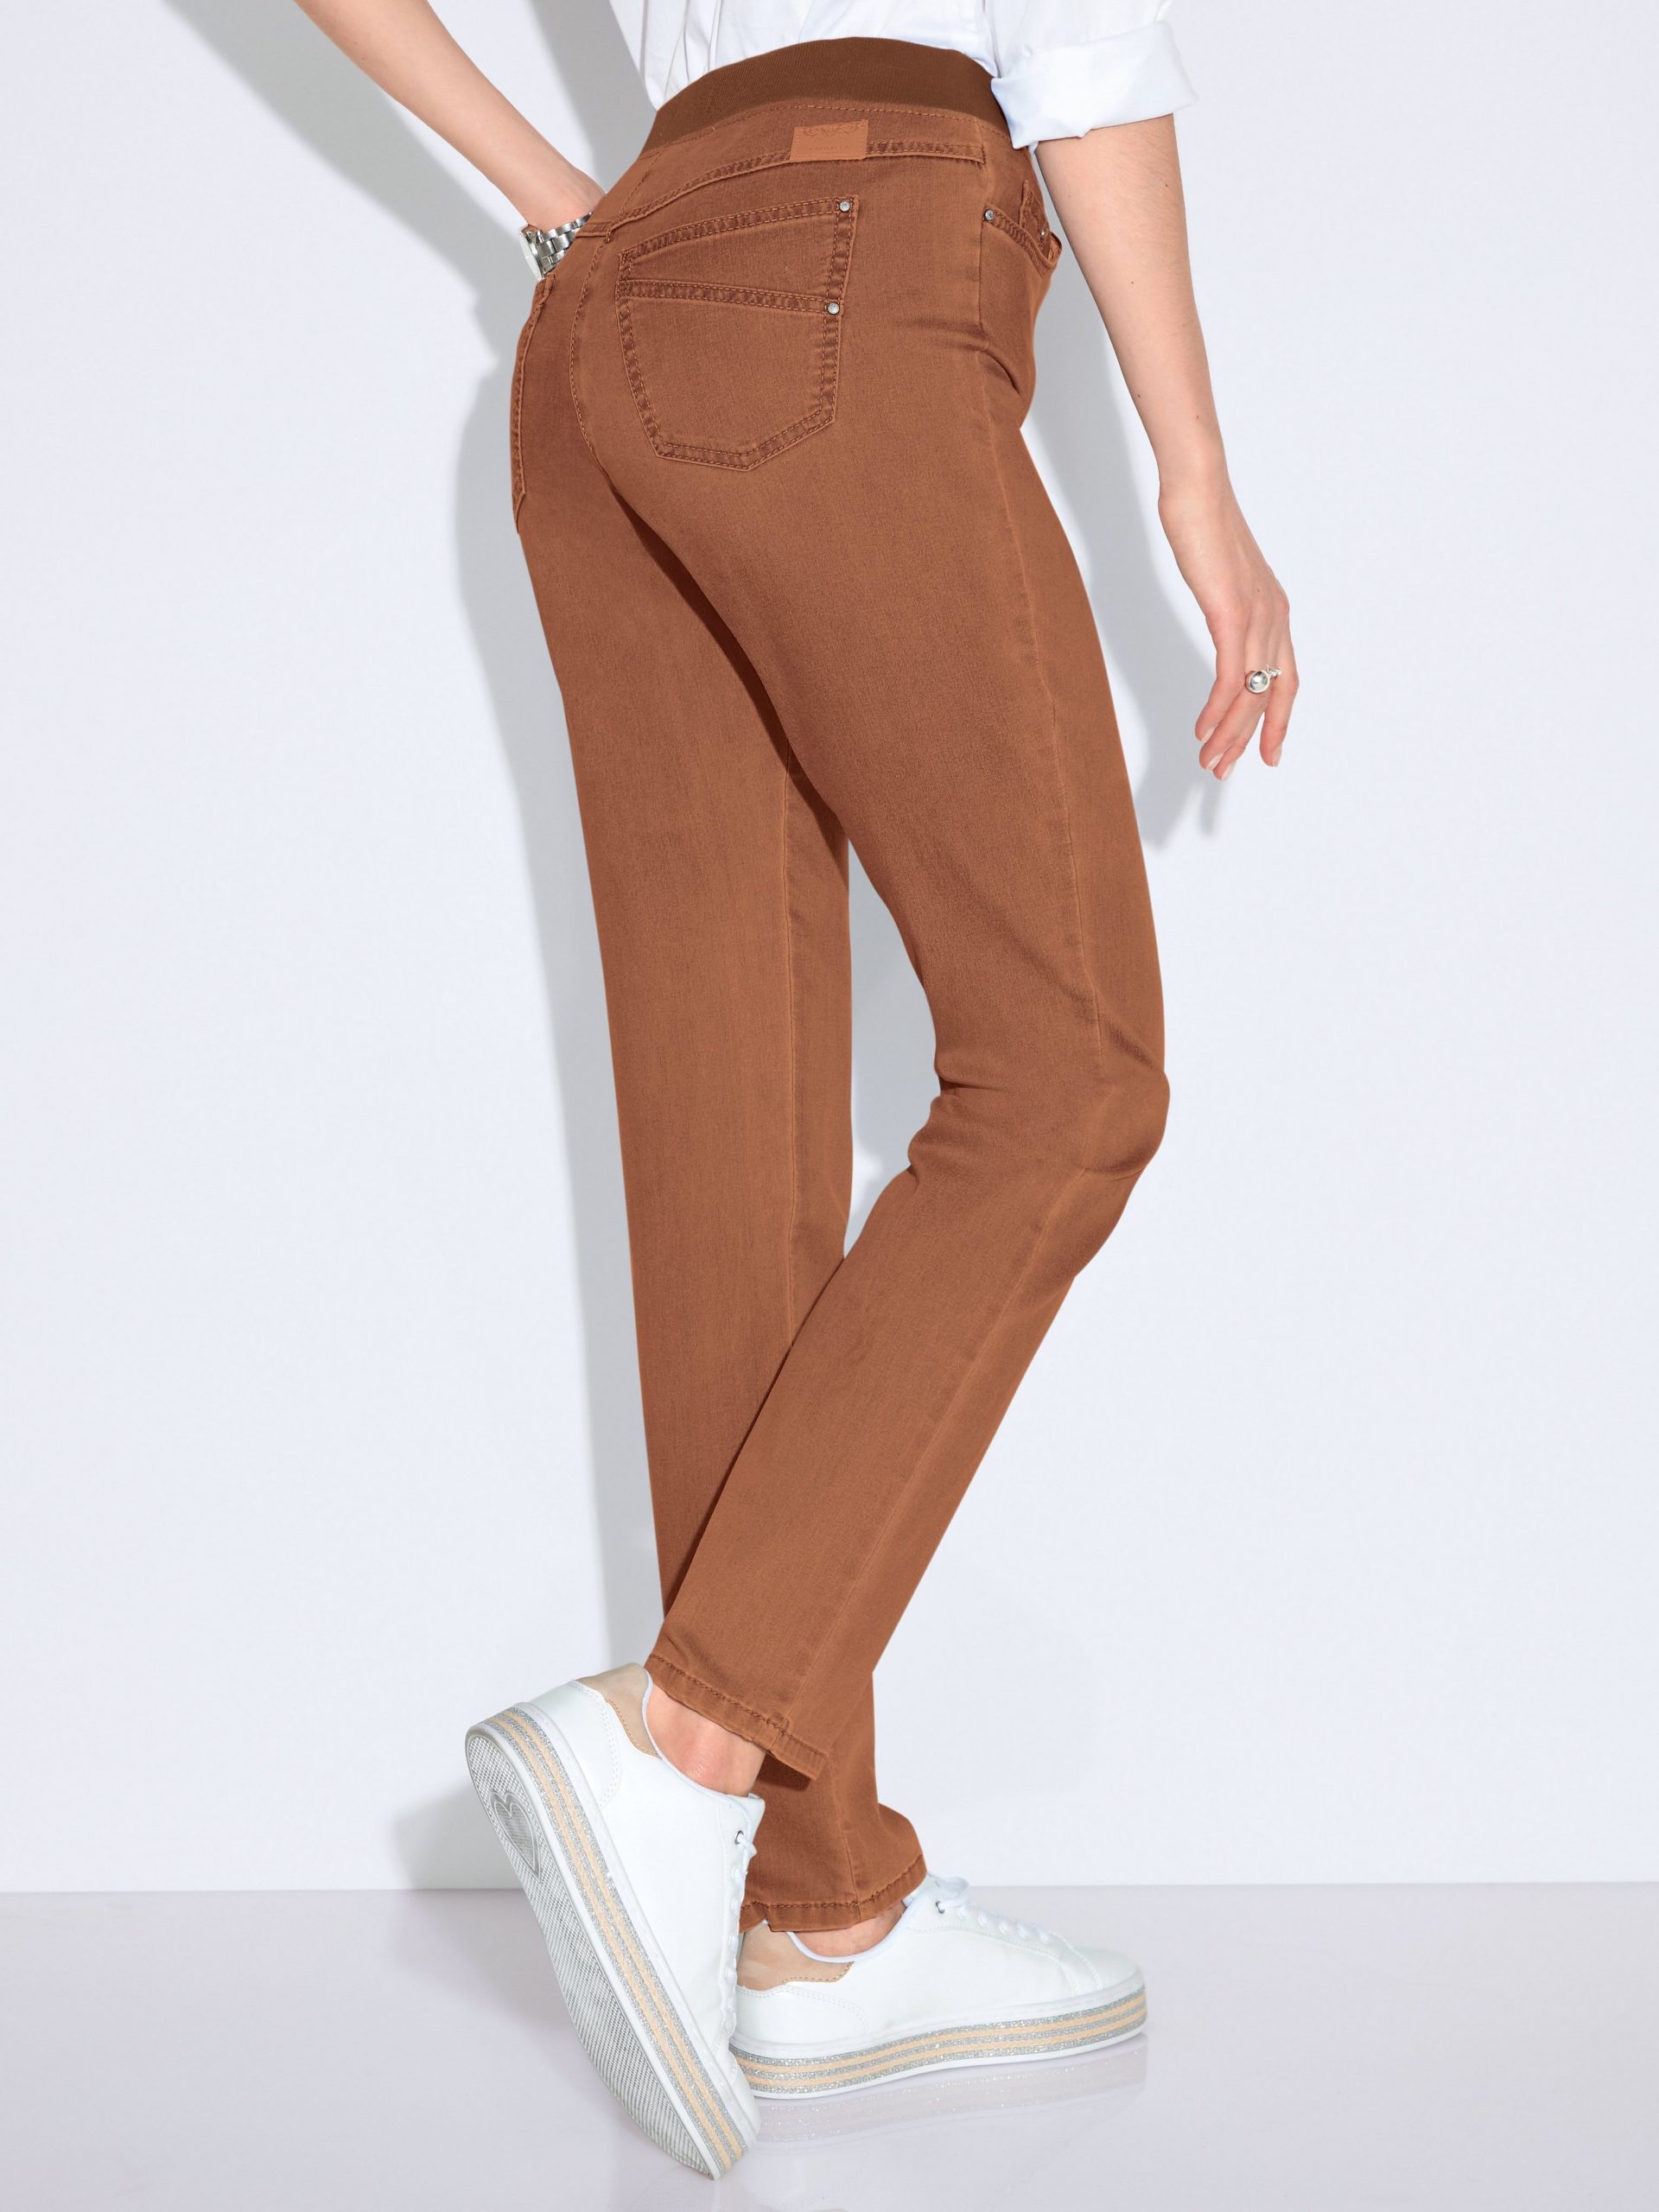 Comfort Plus-jeans model Carina Van Raphaela by Brax bruin Kopen